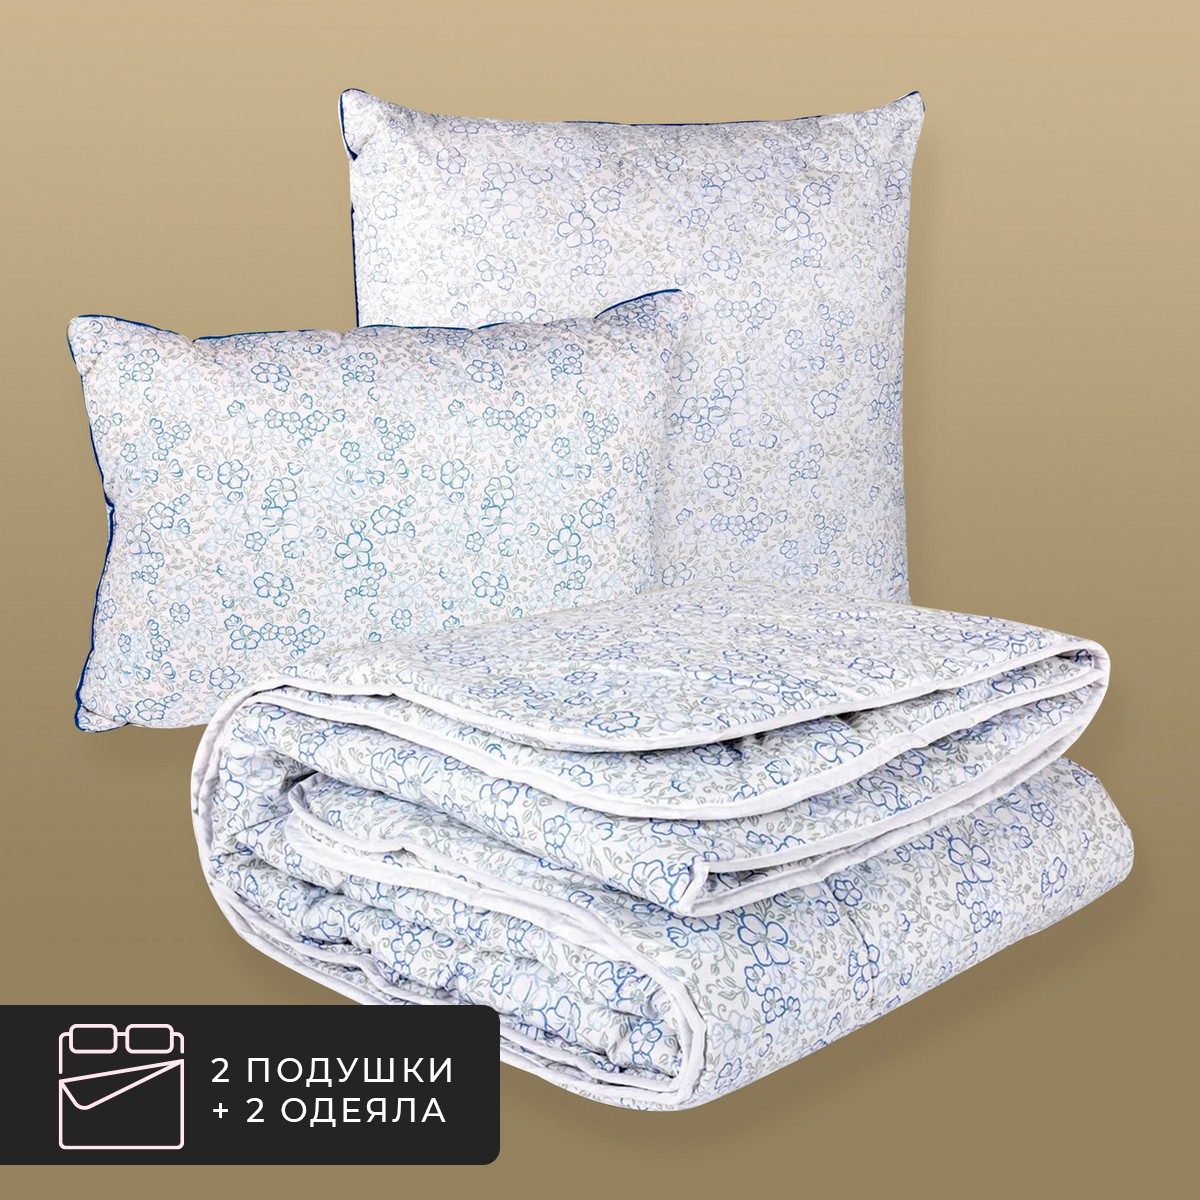 Набор 2 одеяла + 2 подушки Альпийский лен, льняное волокно в хлопковом тике (140х200-2 шт, 70х70-2 шт) CLASSIC BY T